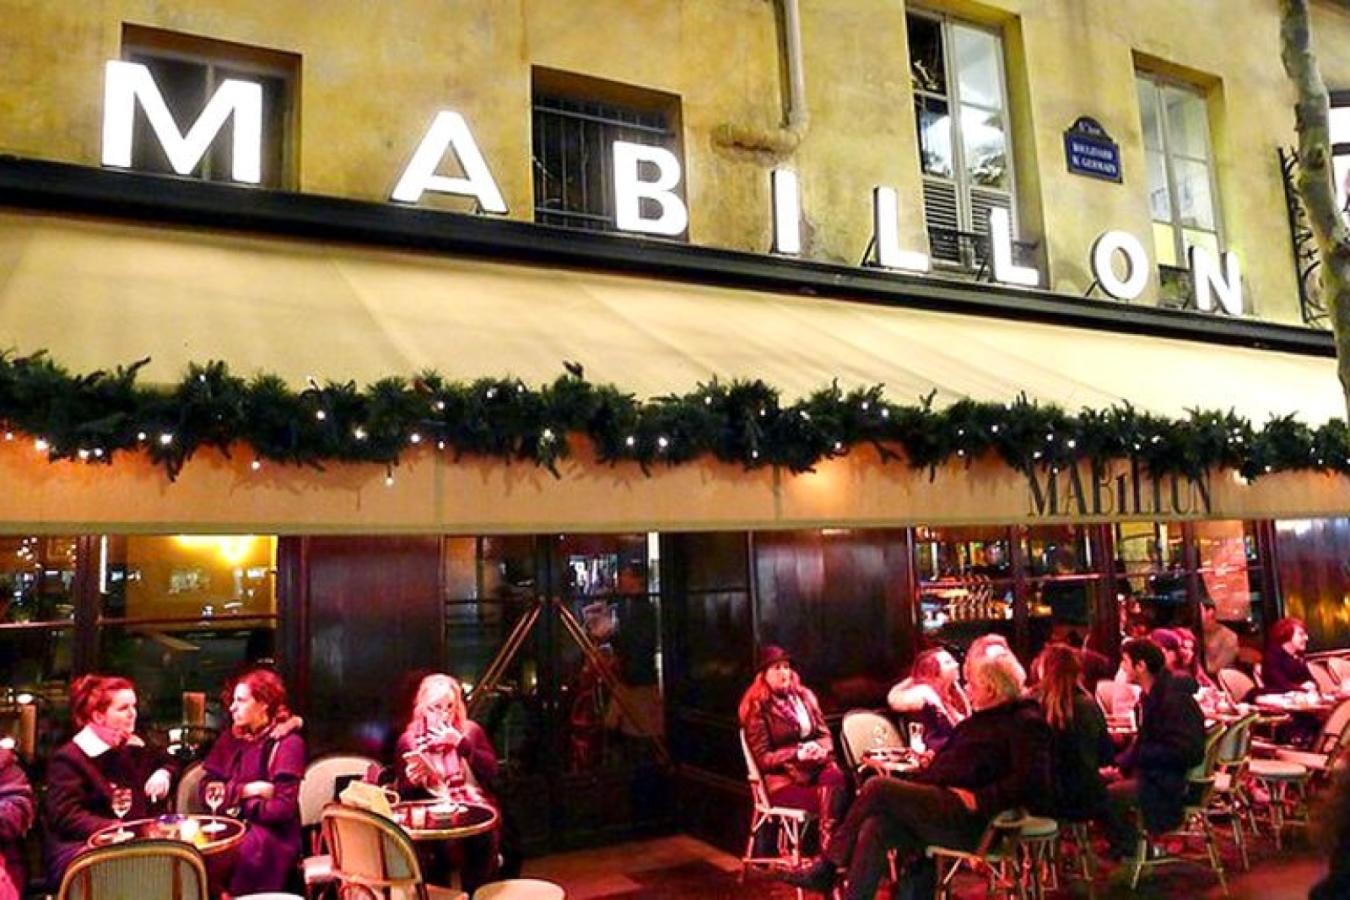 Imagen Le Mabilion, el bar donde sucedió todo.